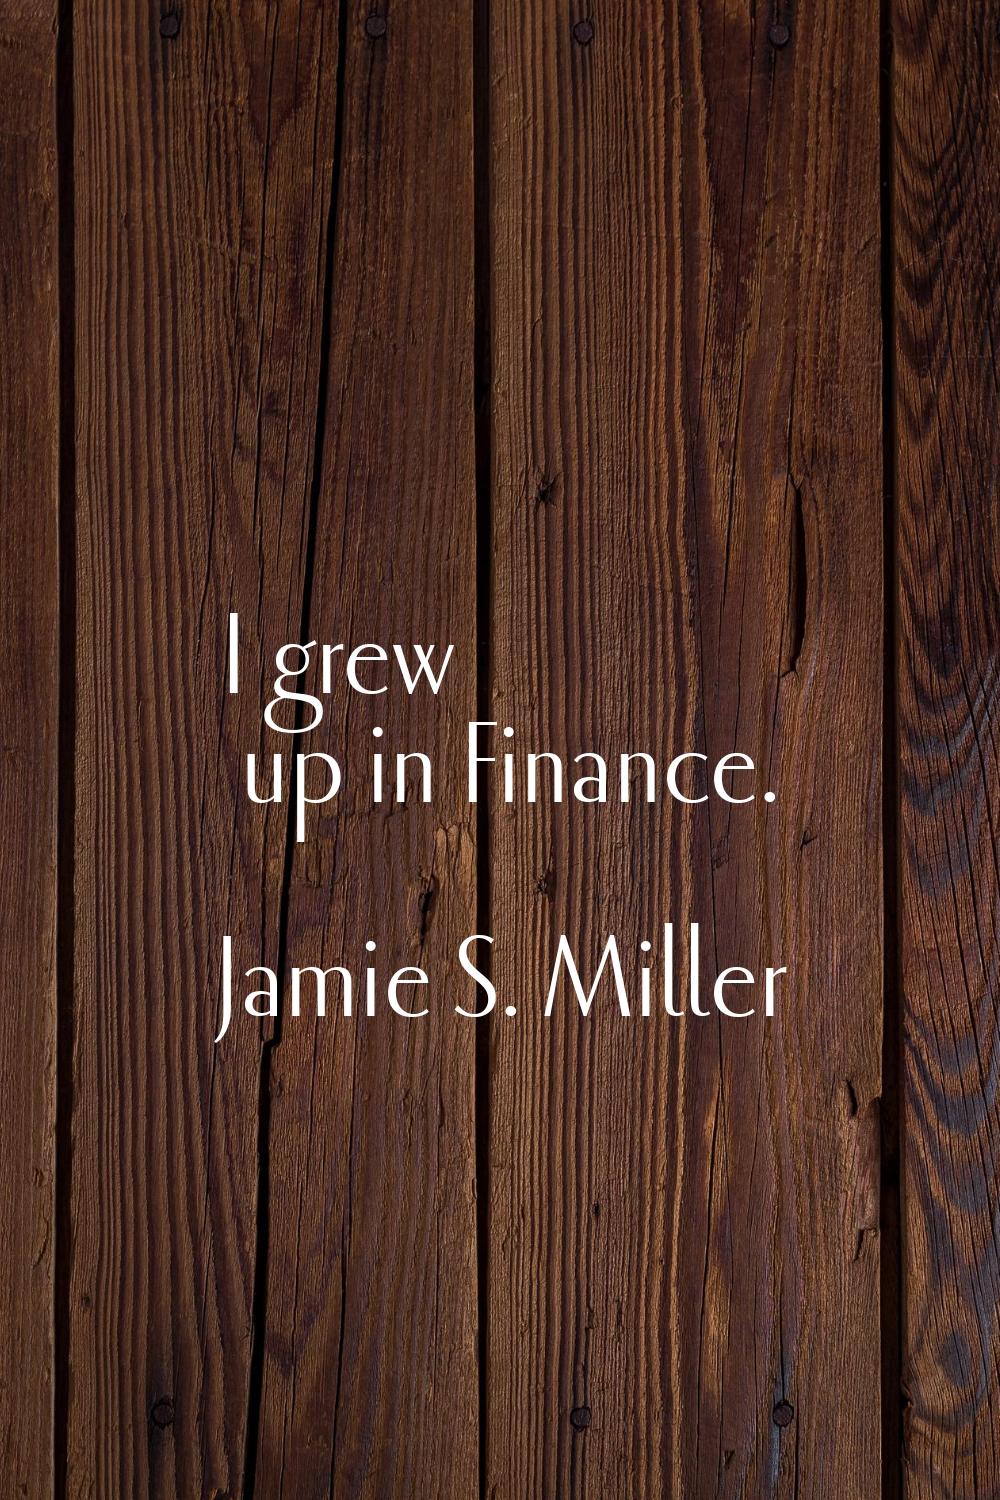 I grew up in Finance.